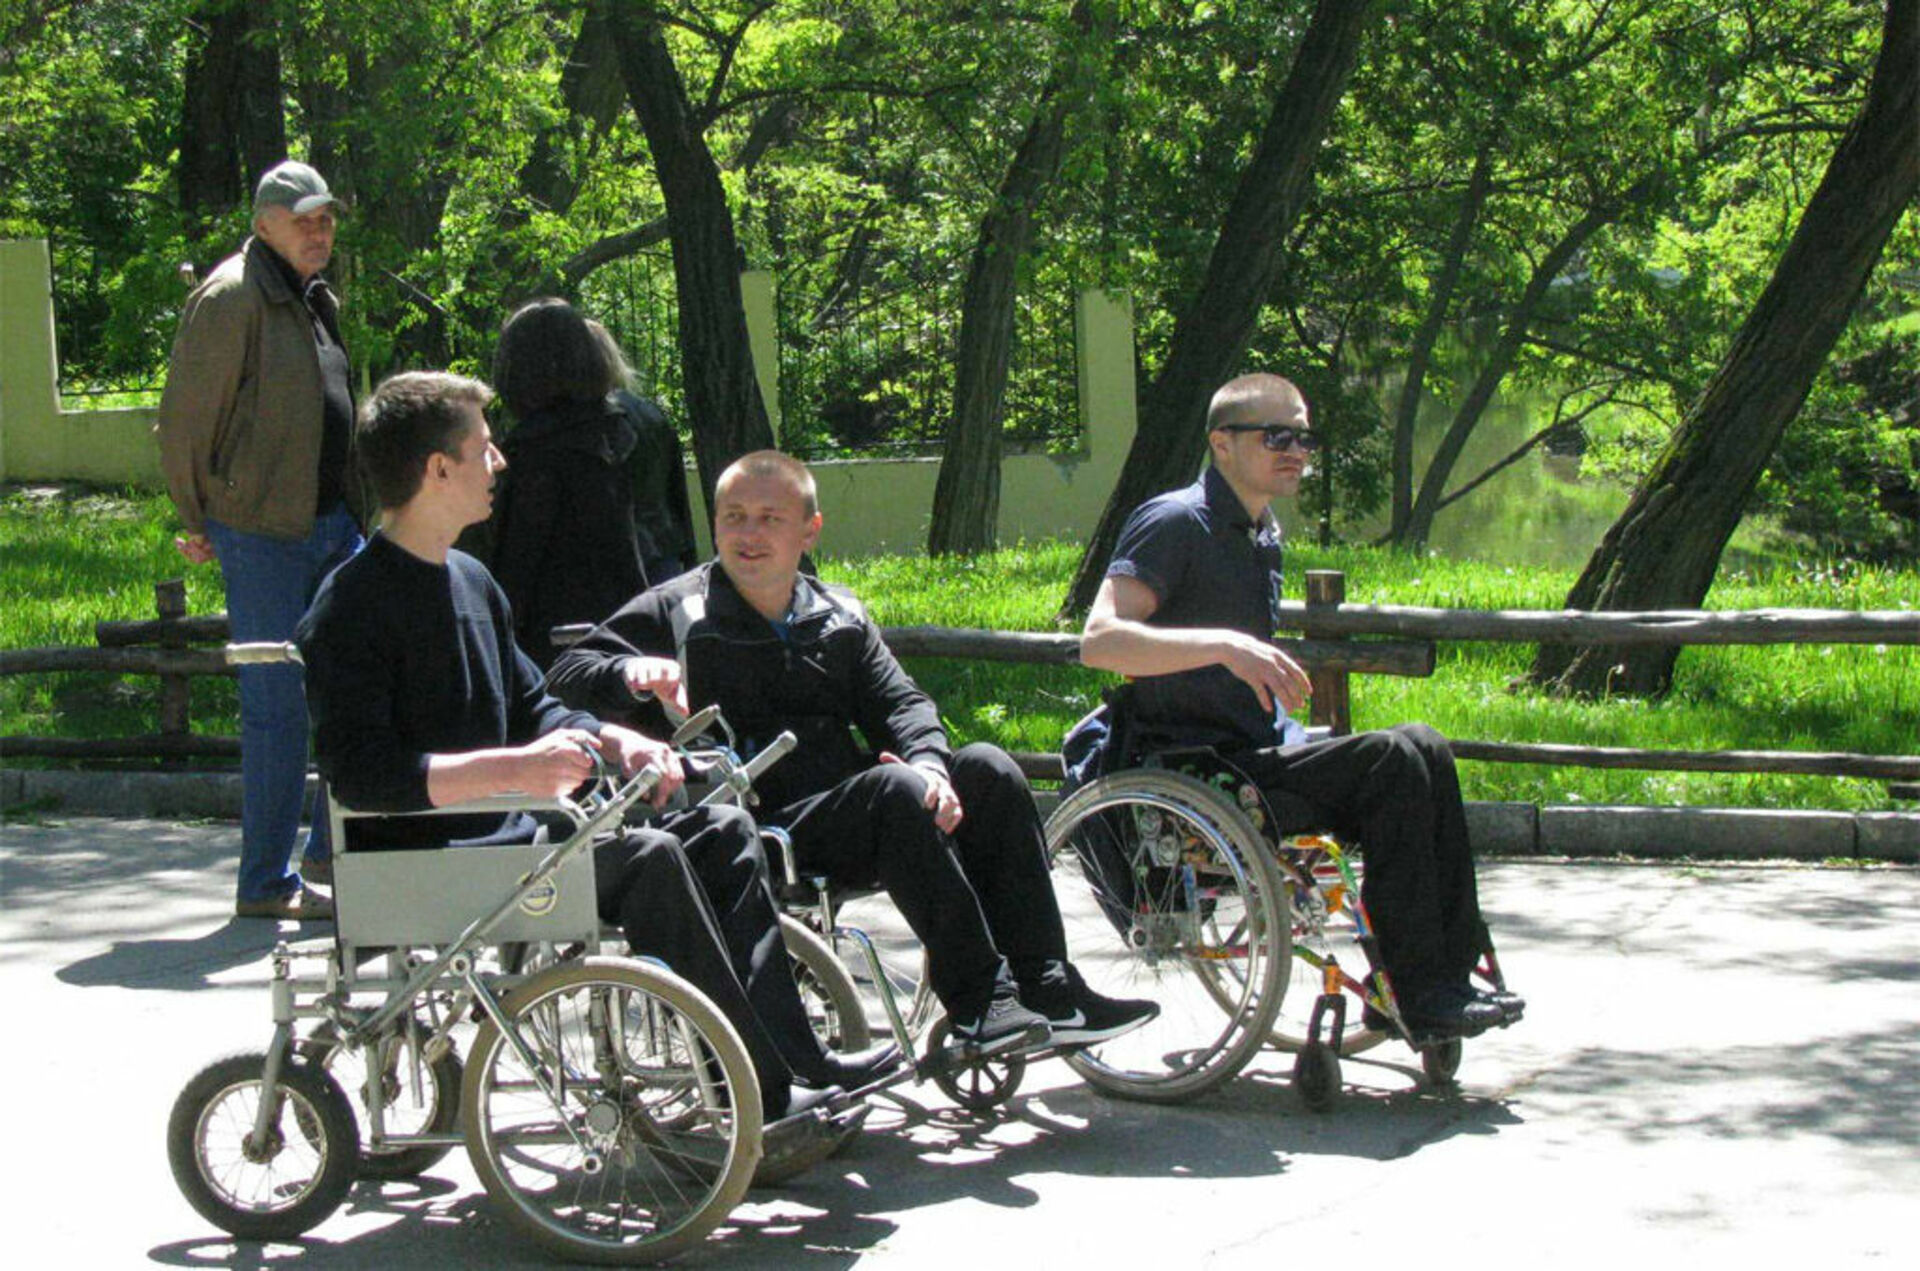 Адаптация инвалидов в обществе. Адаптация инвалидов. Инвалиды 1. Доступный парк. Комплексный центр социальной адаптации инвалидов Новосибирск.